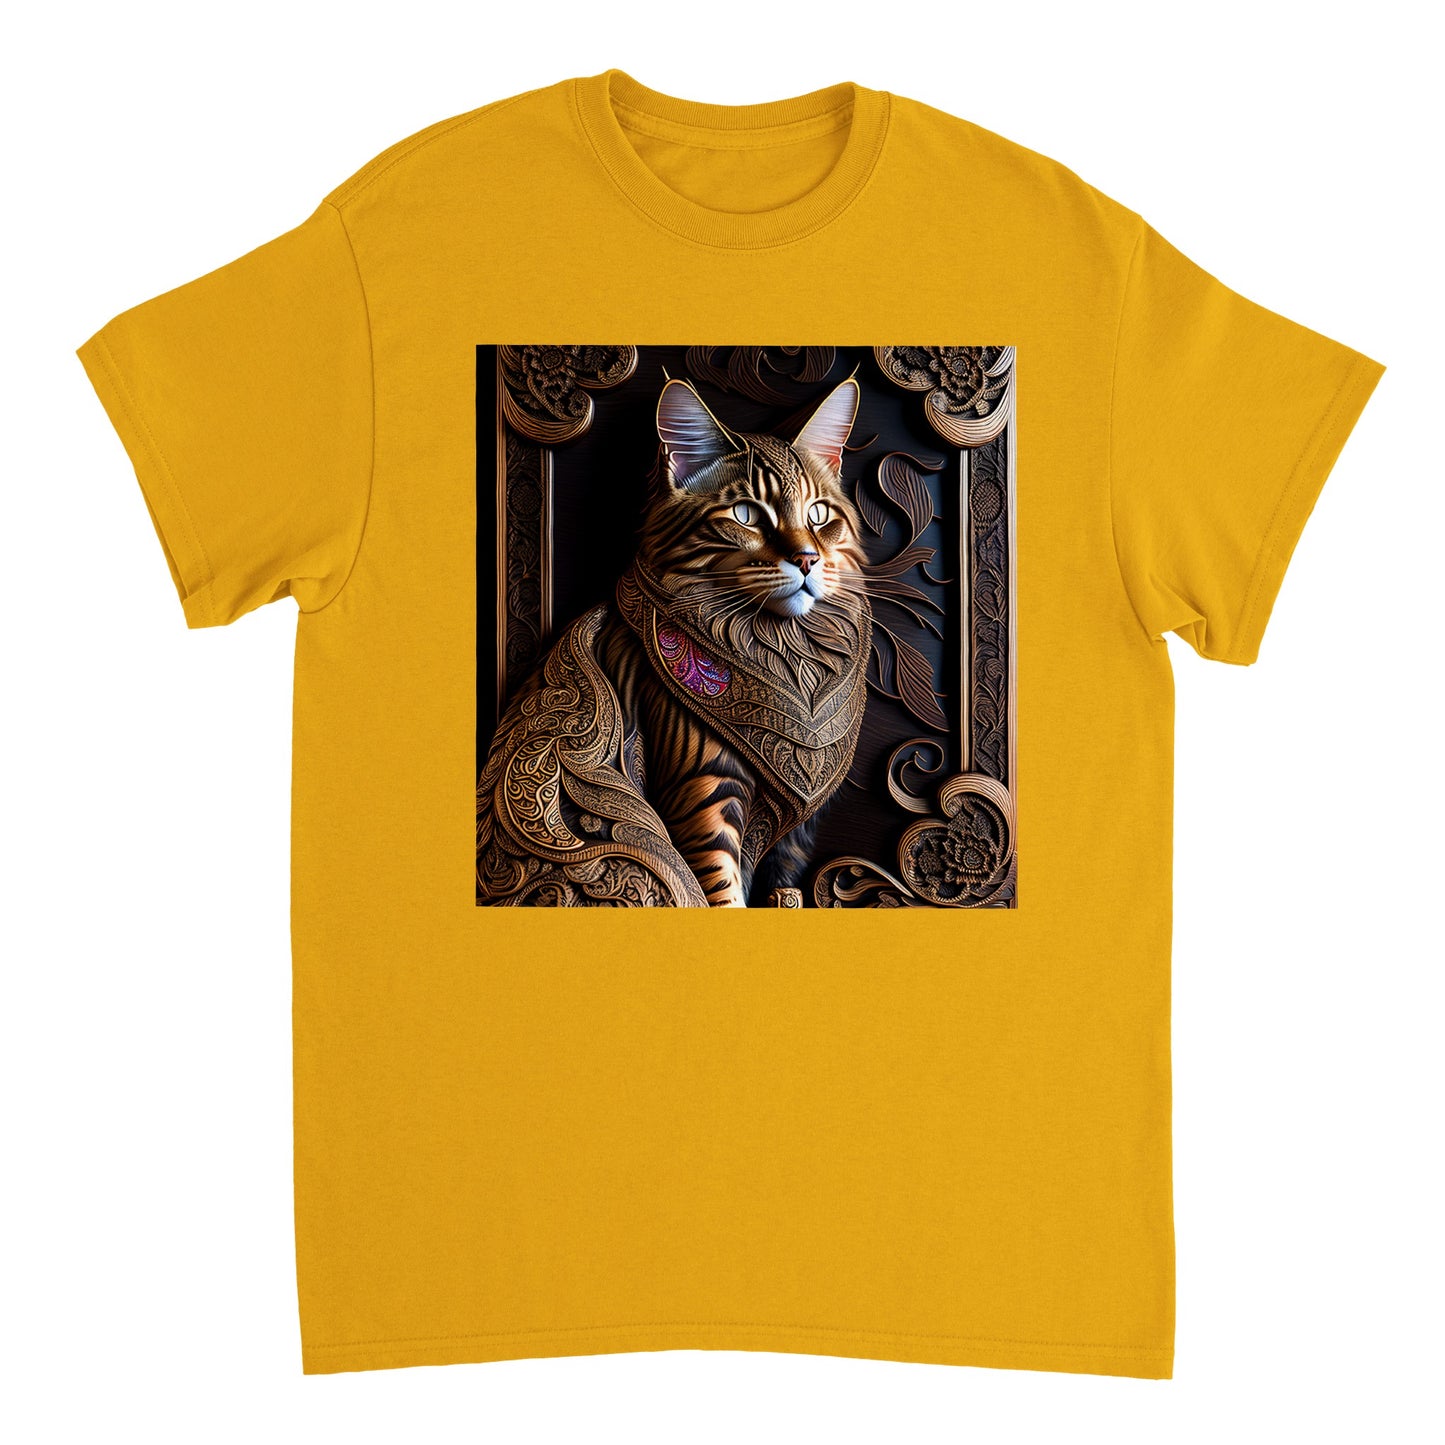 3D Wooden Animal Art - Heavyweight Unisex Crewneck T-shirt 59